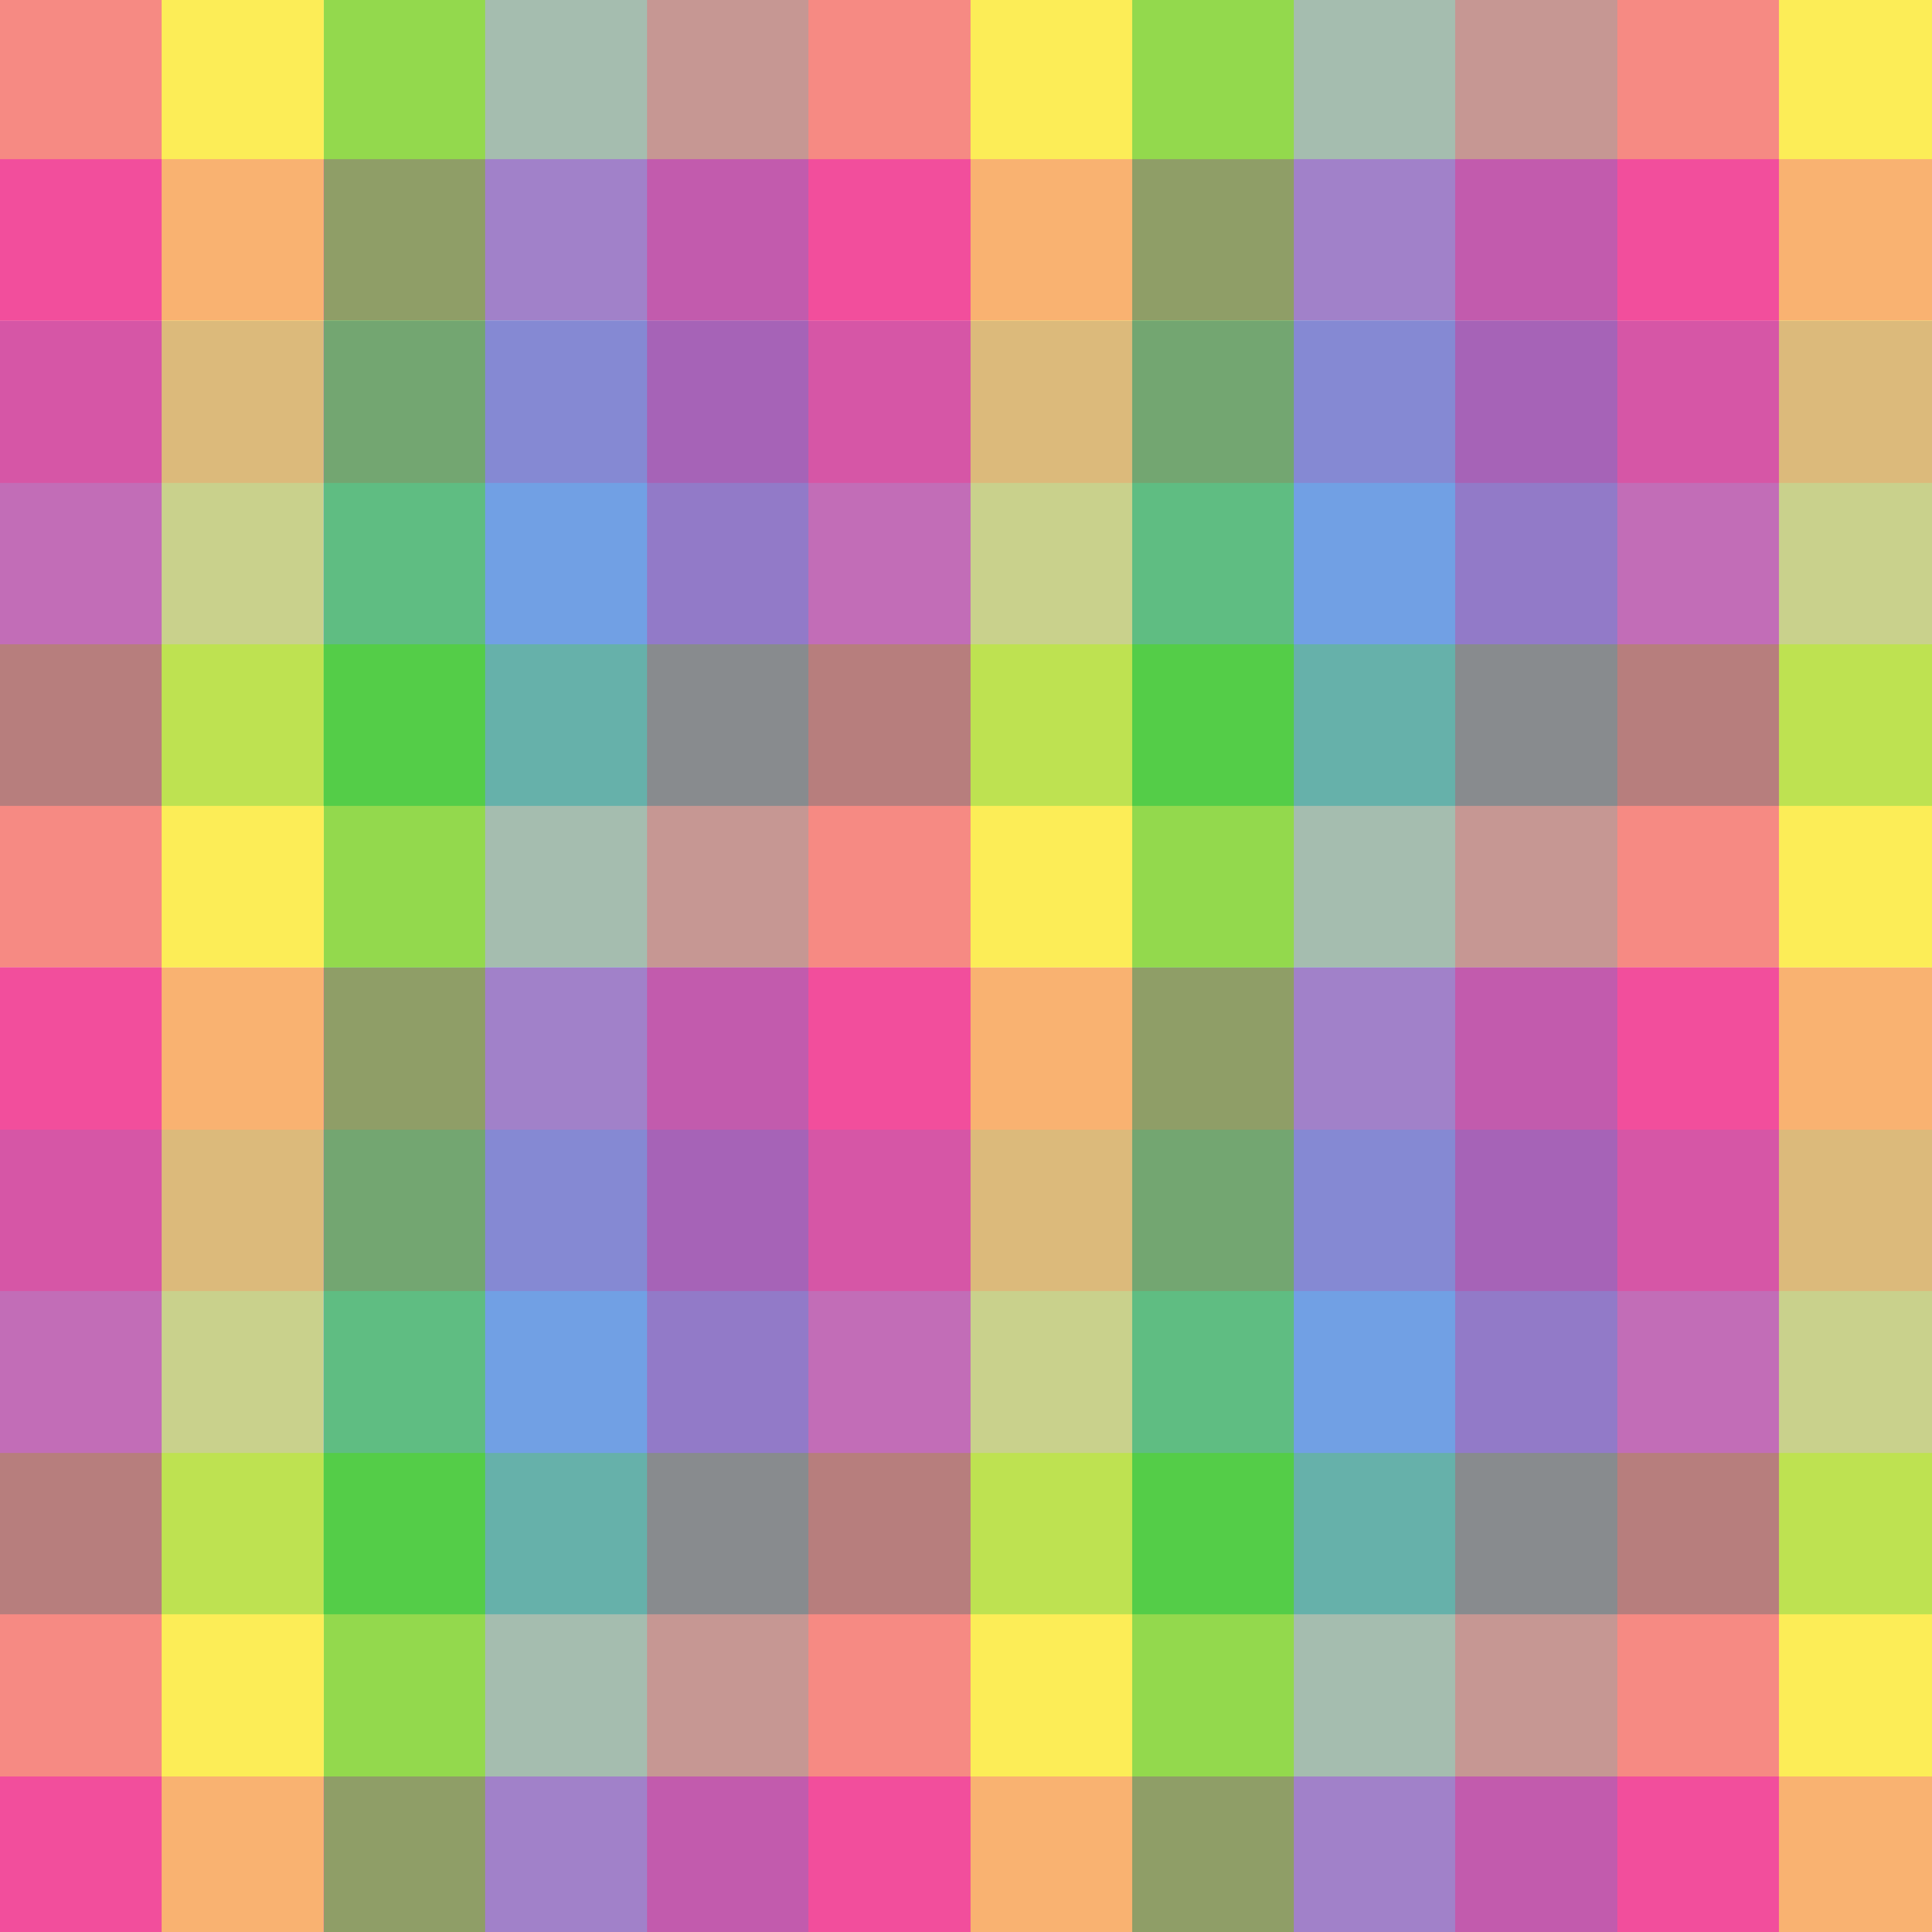 Маленький цветные квадратики. Цветной фон. Цветные квадраты. Разноцветные квадратики. Разноцветный паттерн.